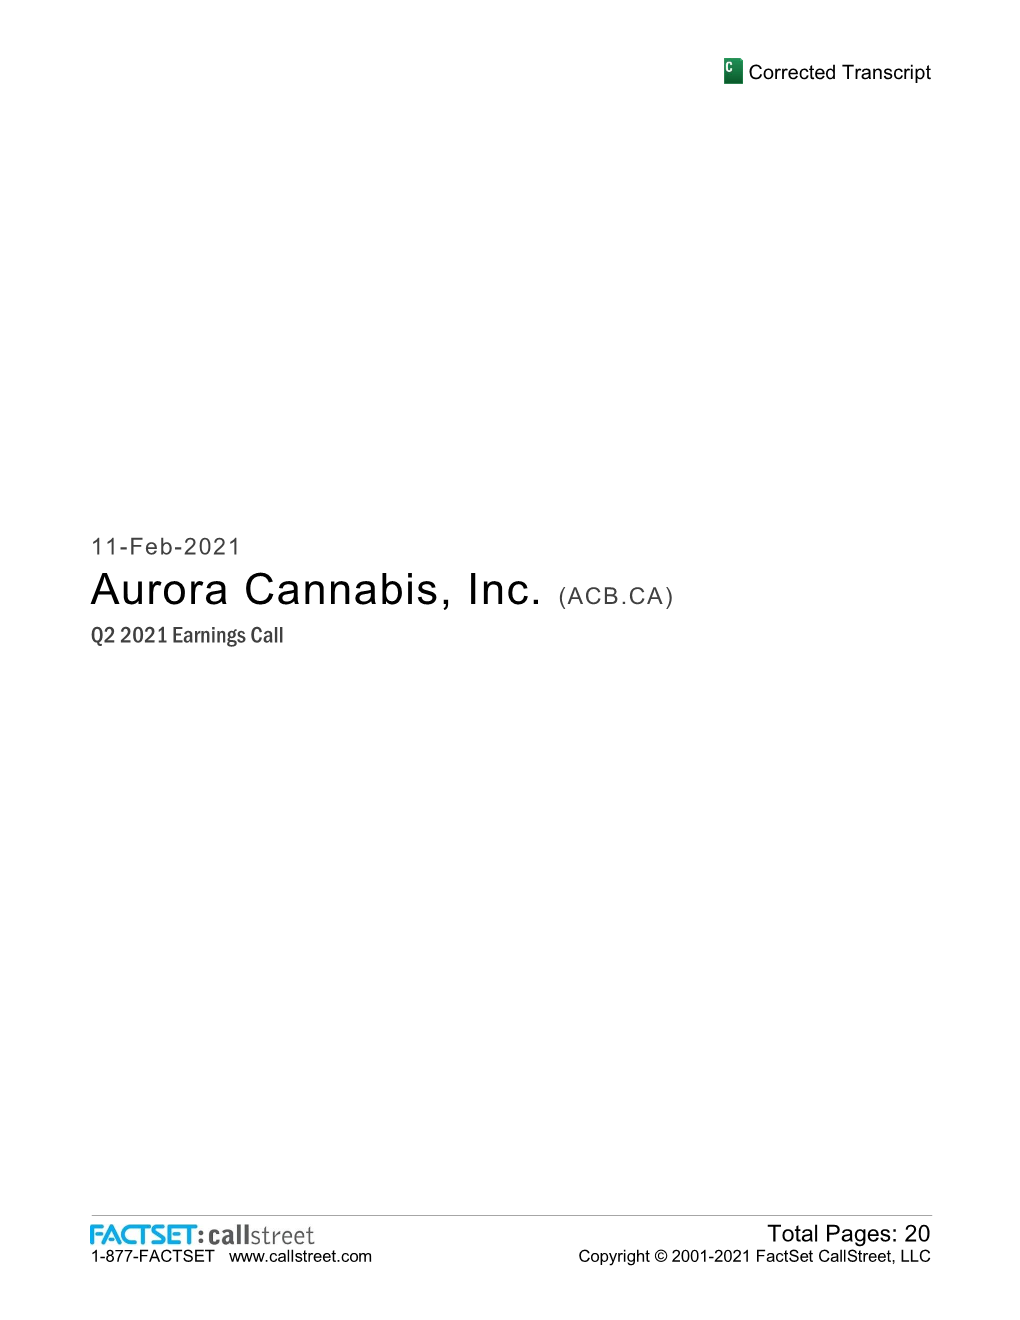 Aurora Cannabis, Inc. (ACB.CA) Q2 2021 Earnings Call